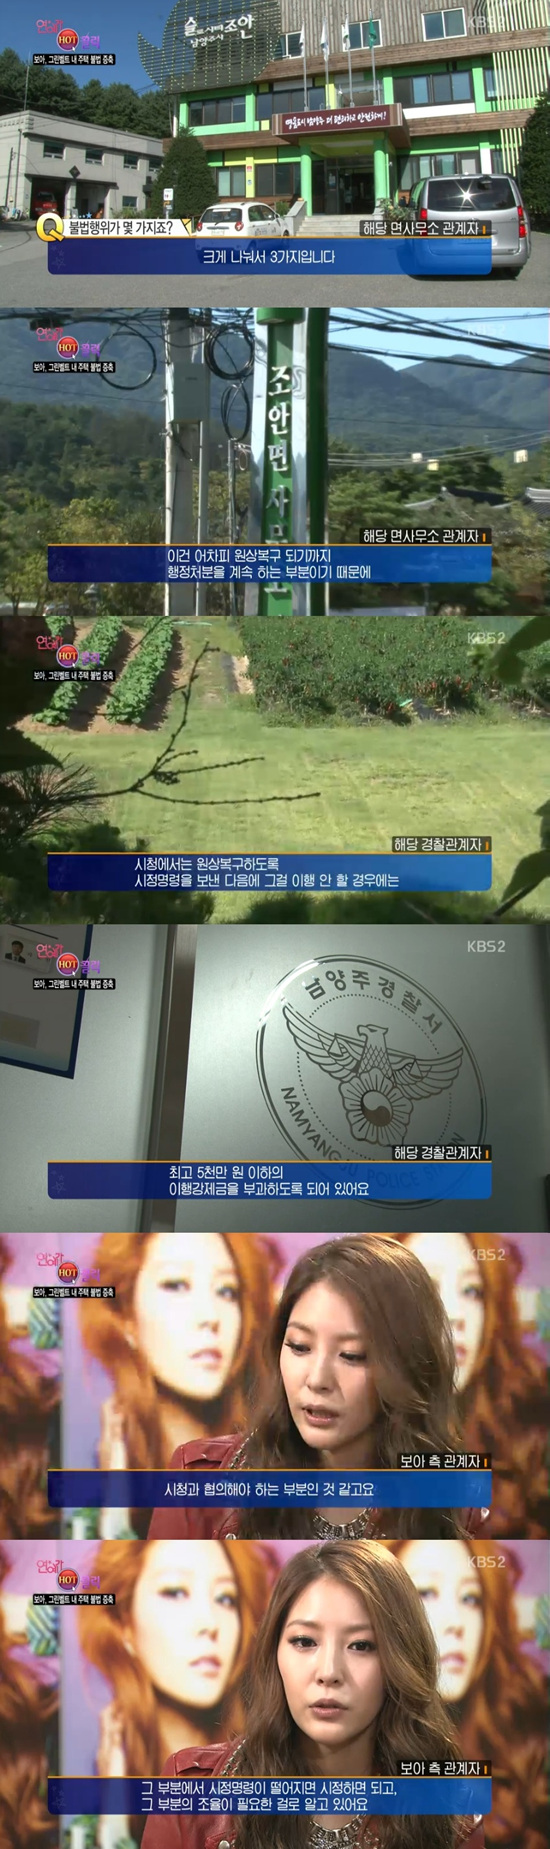 '연예가중계' 보아의 그린벨트 내 주택 불법 증축 소식이 전해졌다. ⓒ KBS 방송화면